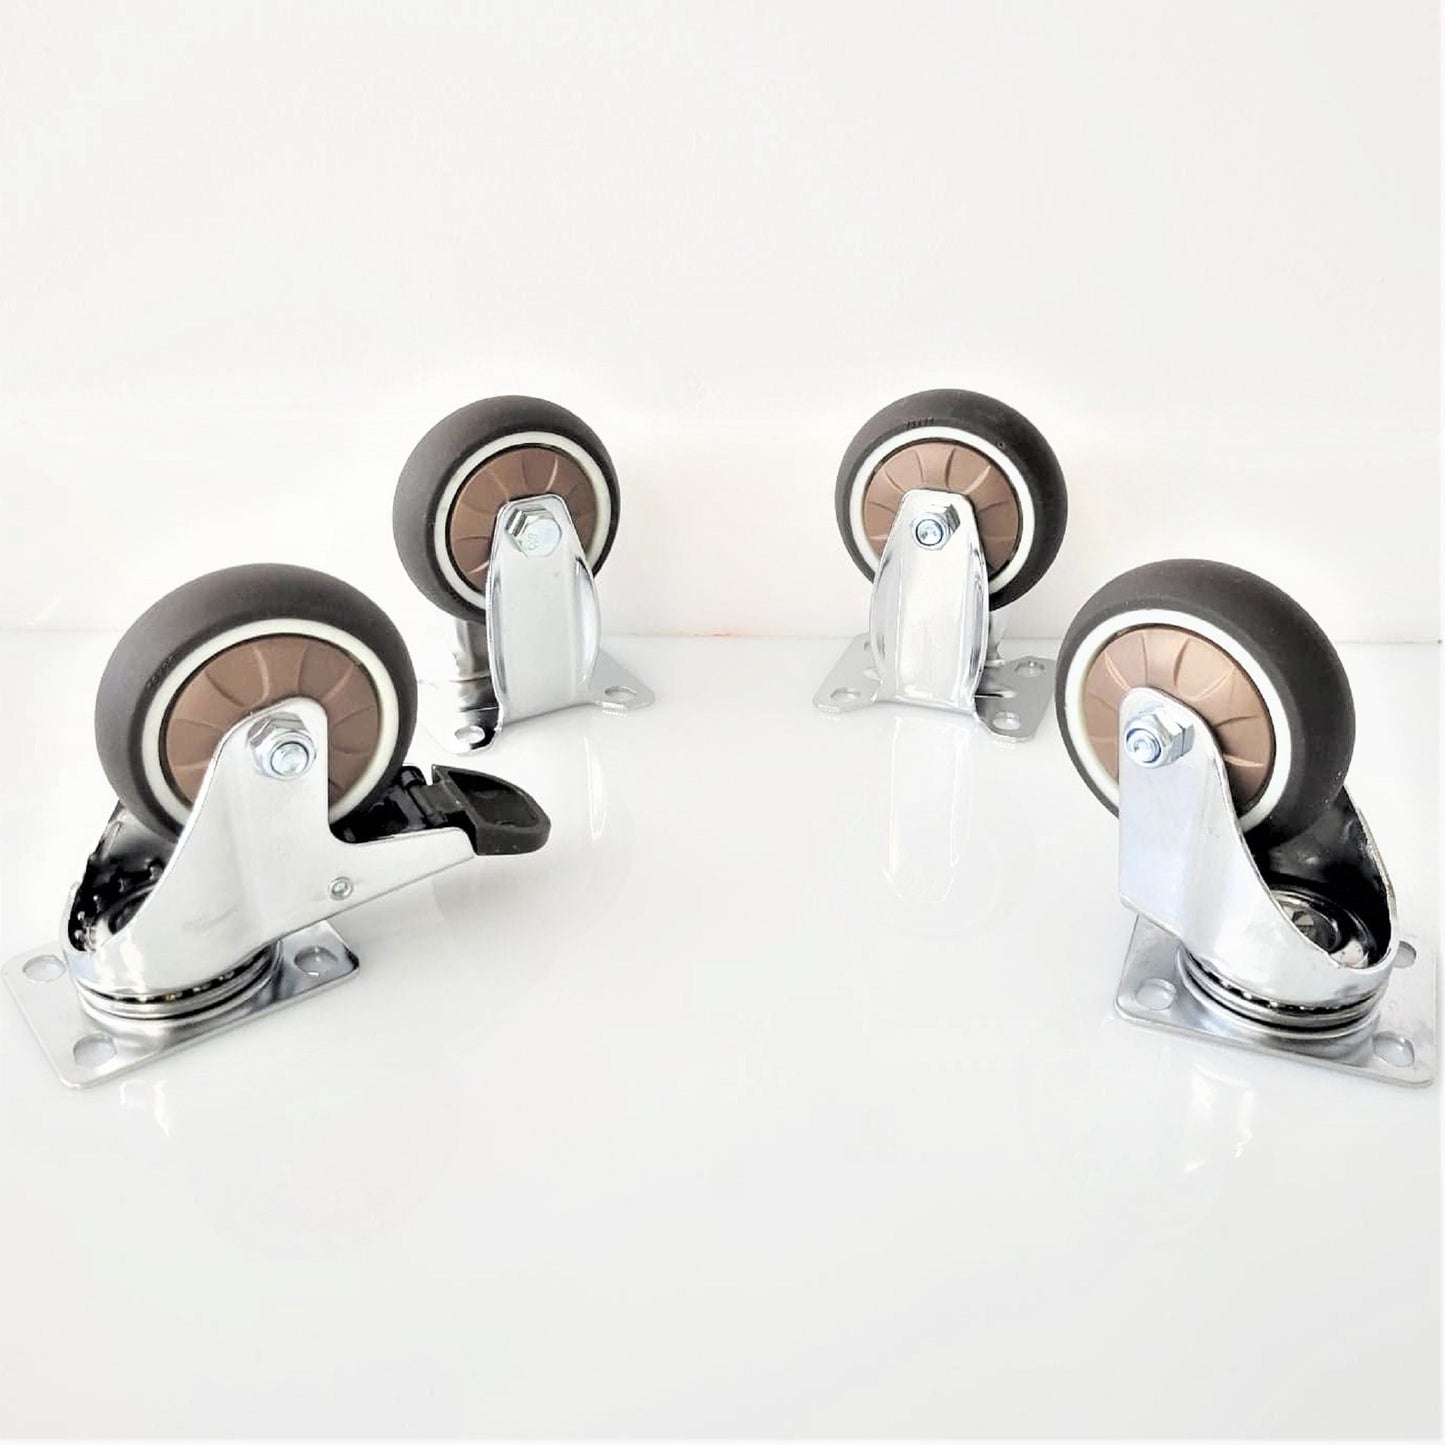 3" TPR Caster Wheels - Set of 4 Pcs